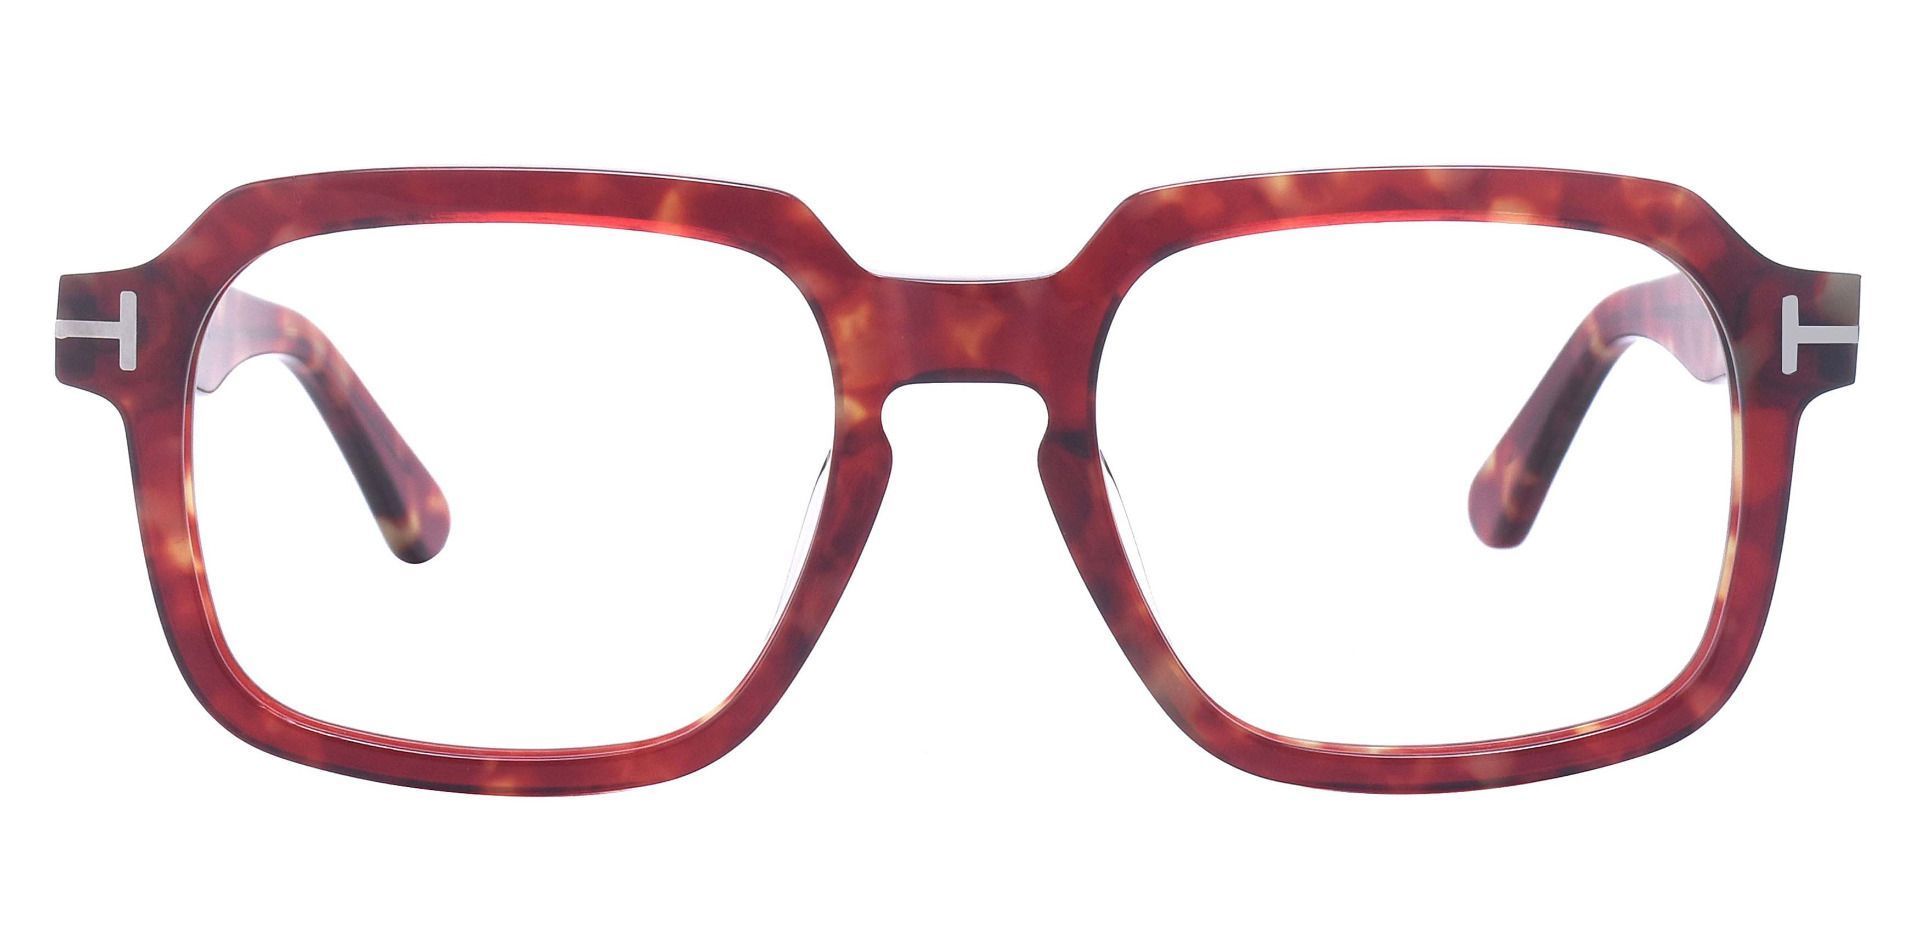 Celadon Square Prescription Glasses - Red